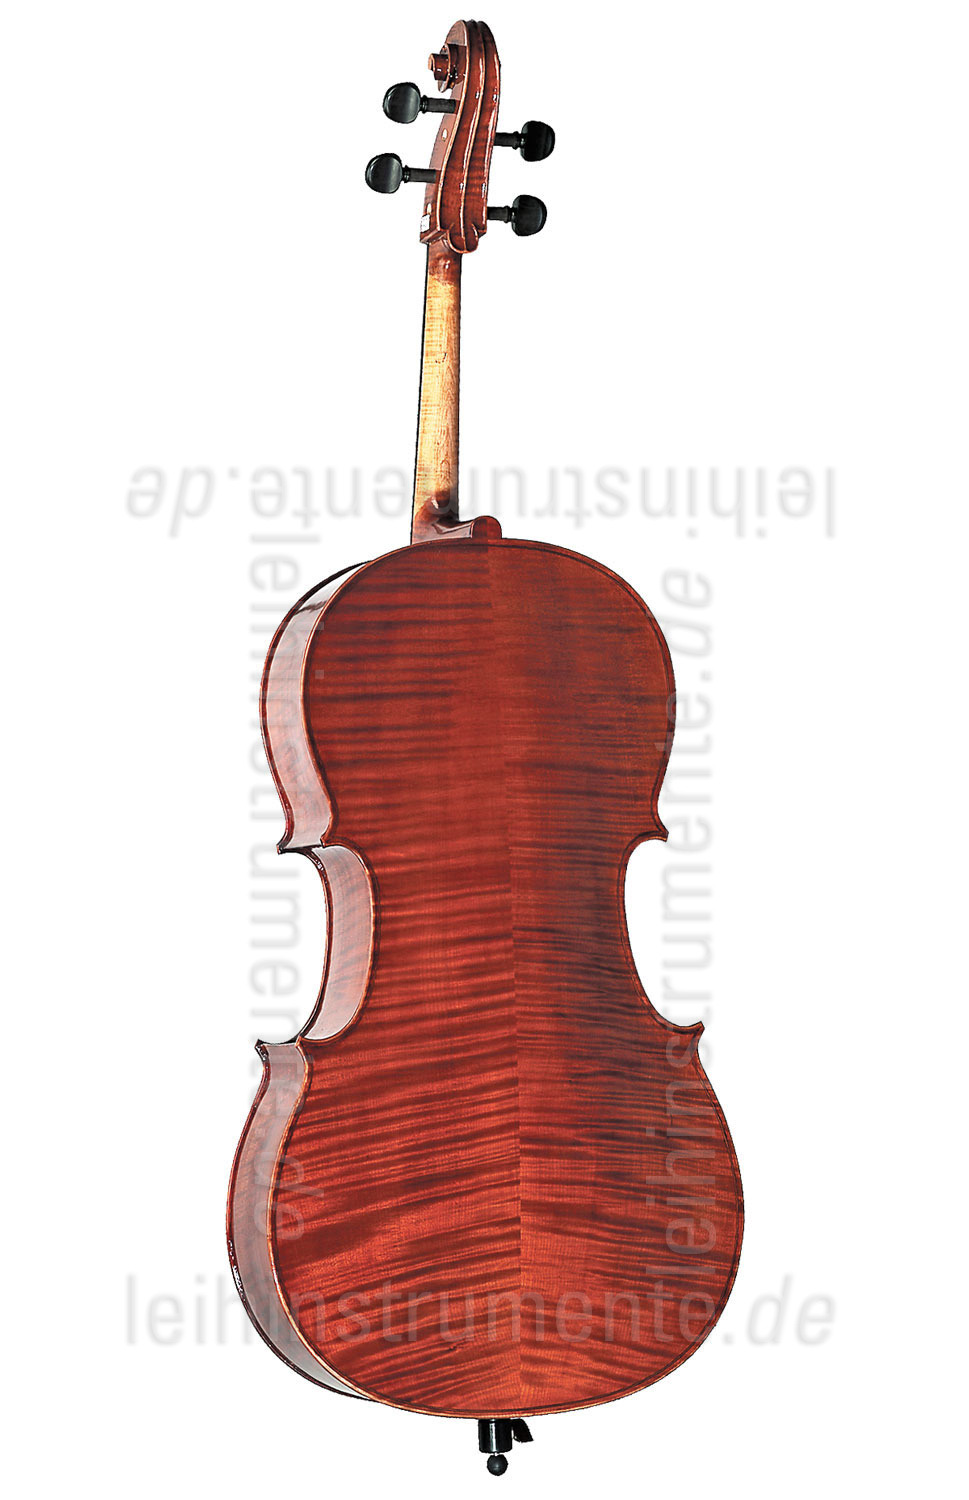 zur Artikelbeschreibung / Preis 3/4 Cello - HÖFNER MODELL 3 - Komplettset - vollmassiv